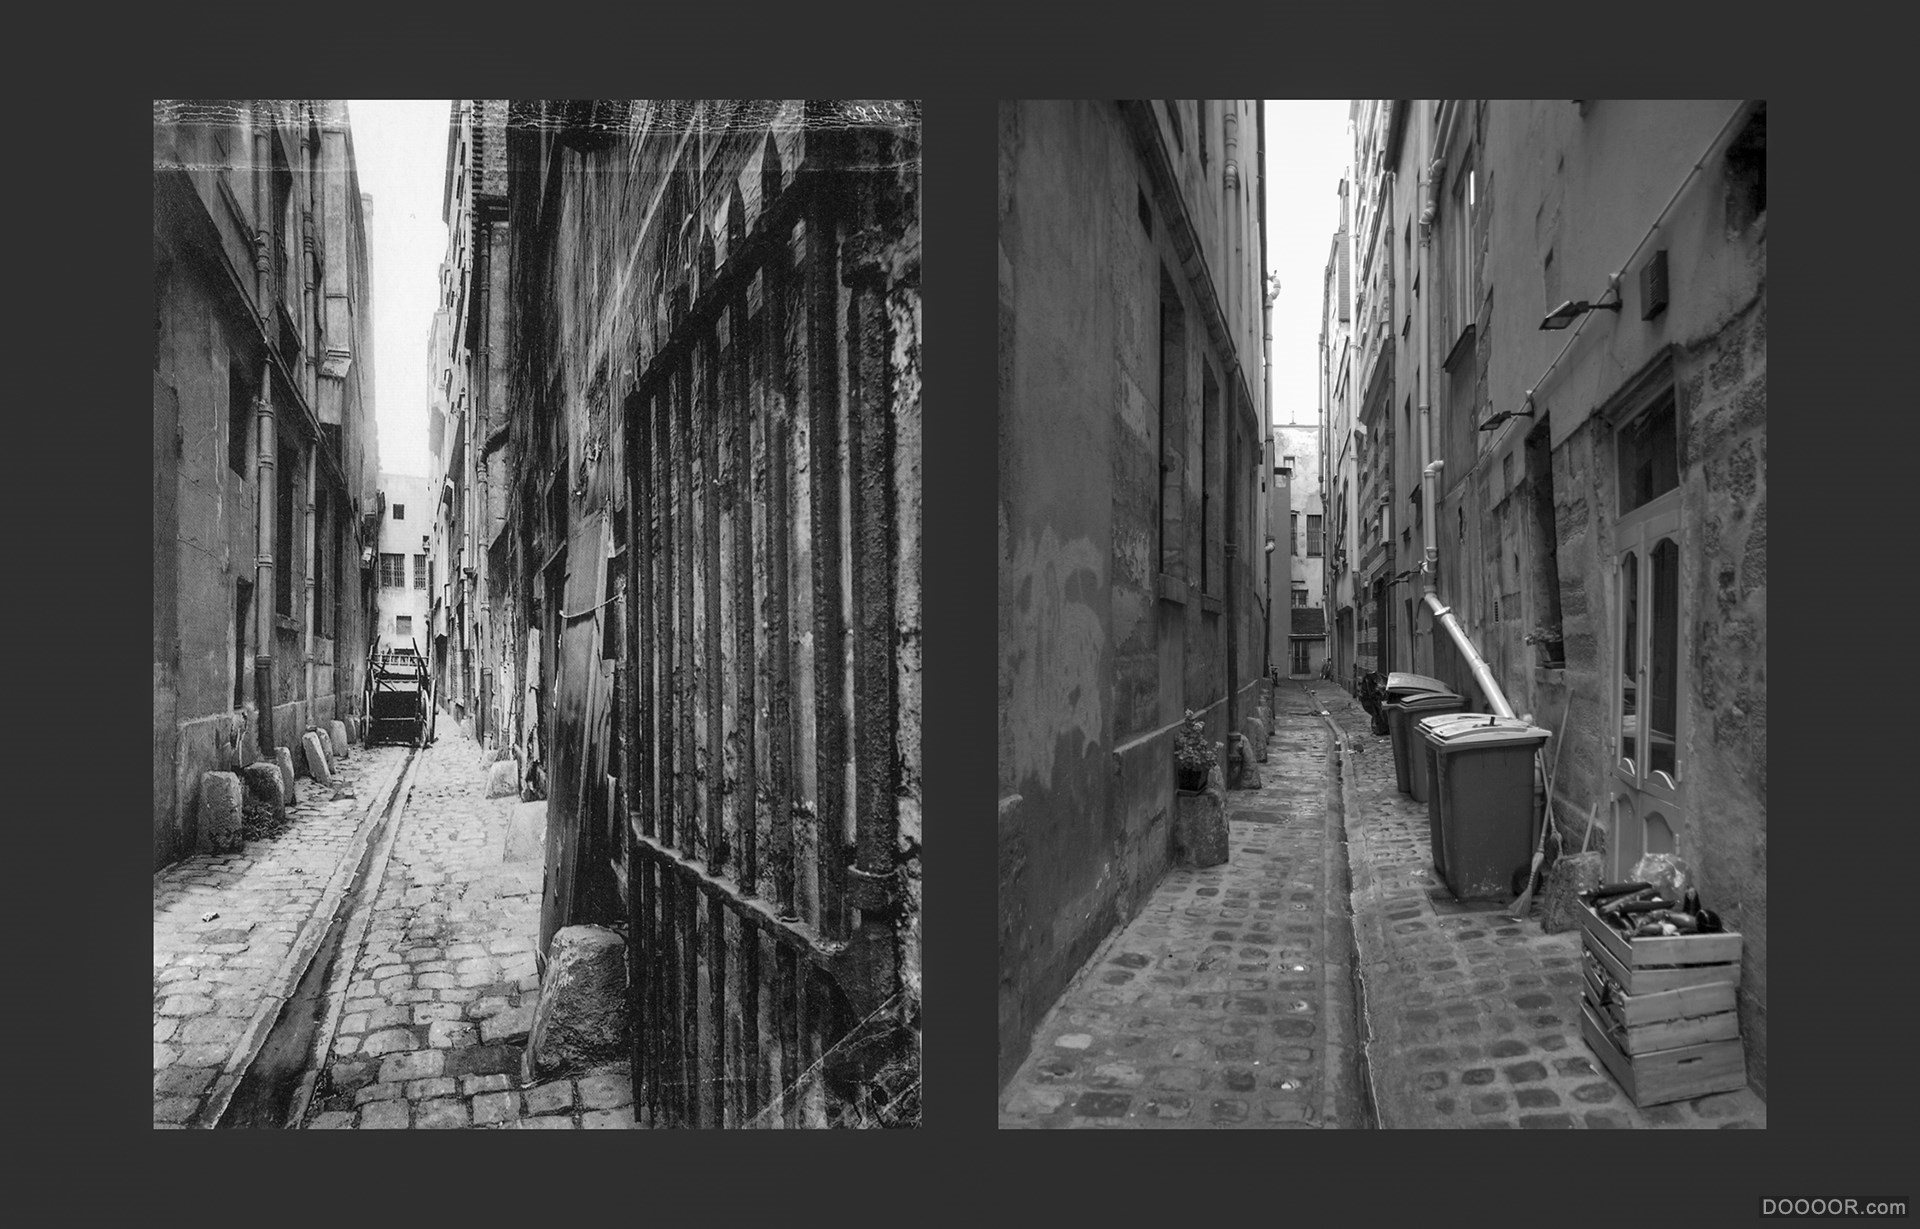 过去与现在-巴黎街头照片对比 [50P] (9).jpg